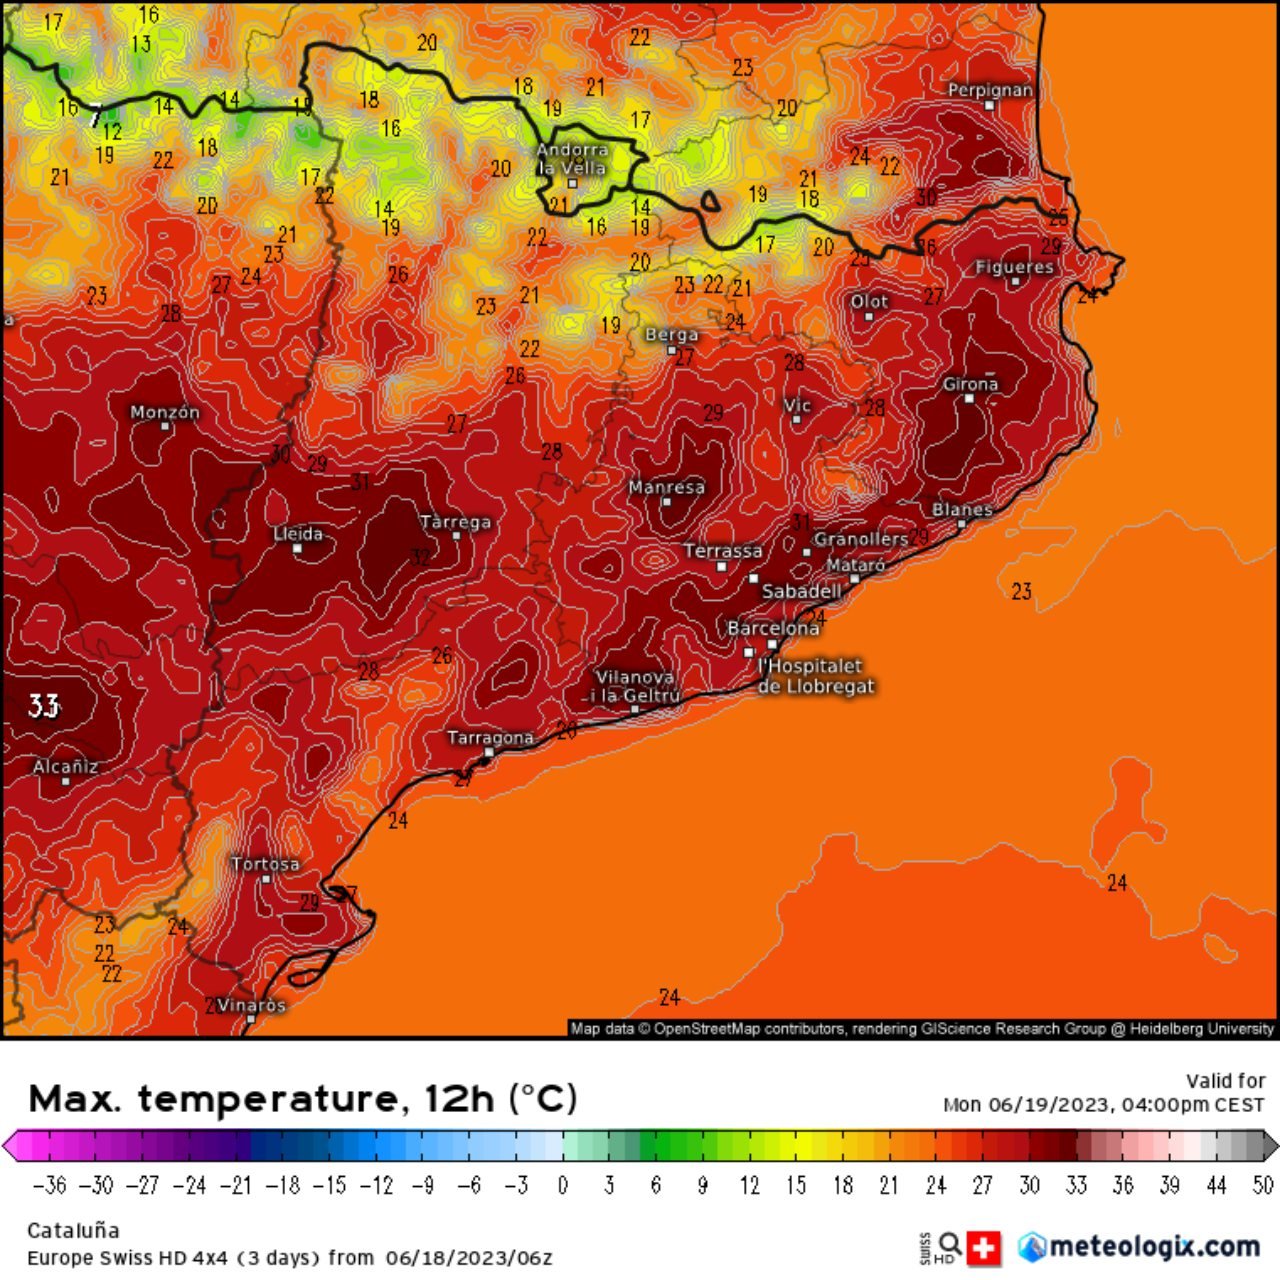 La calor apretarà a tota Catalunya aquesta setmana. Les màximes per dilluns superen els 30 °C a quasi tot arreu / Meteologix.com